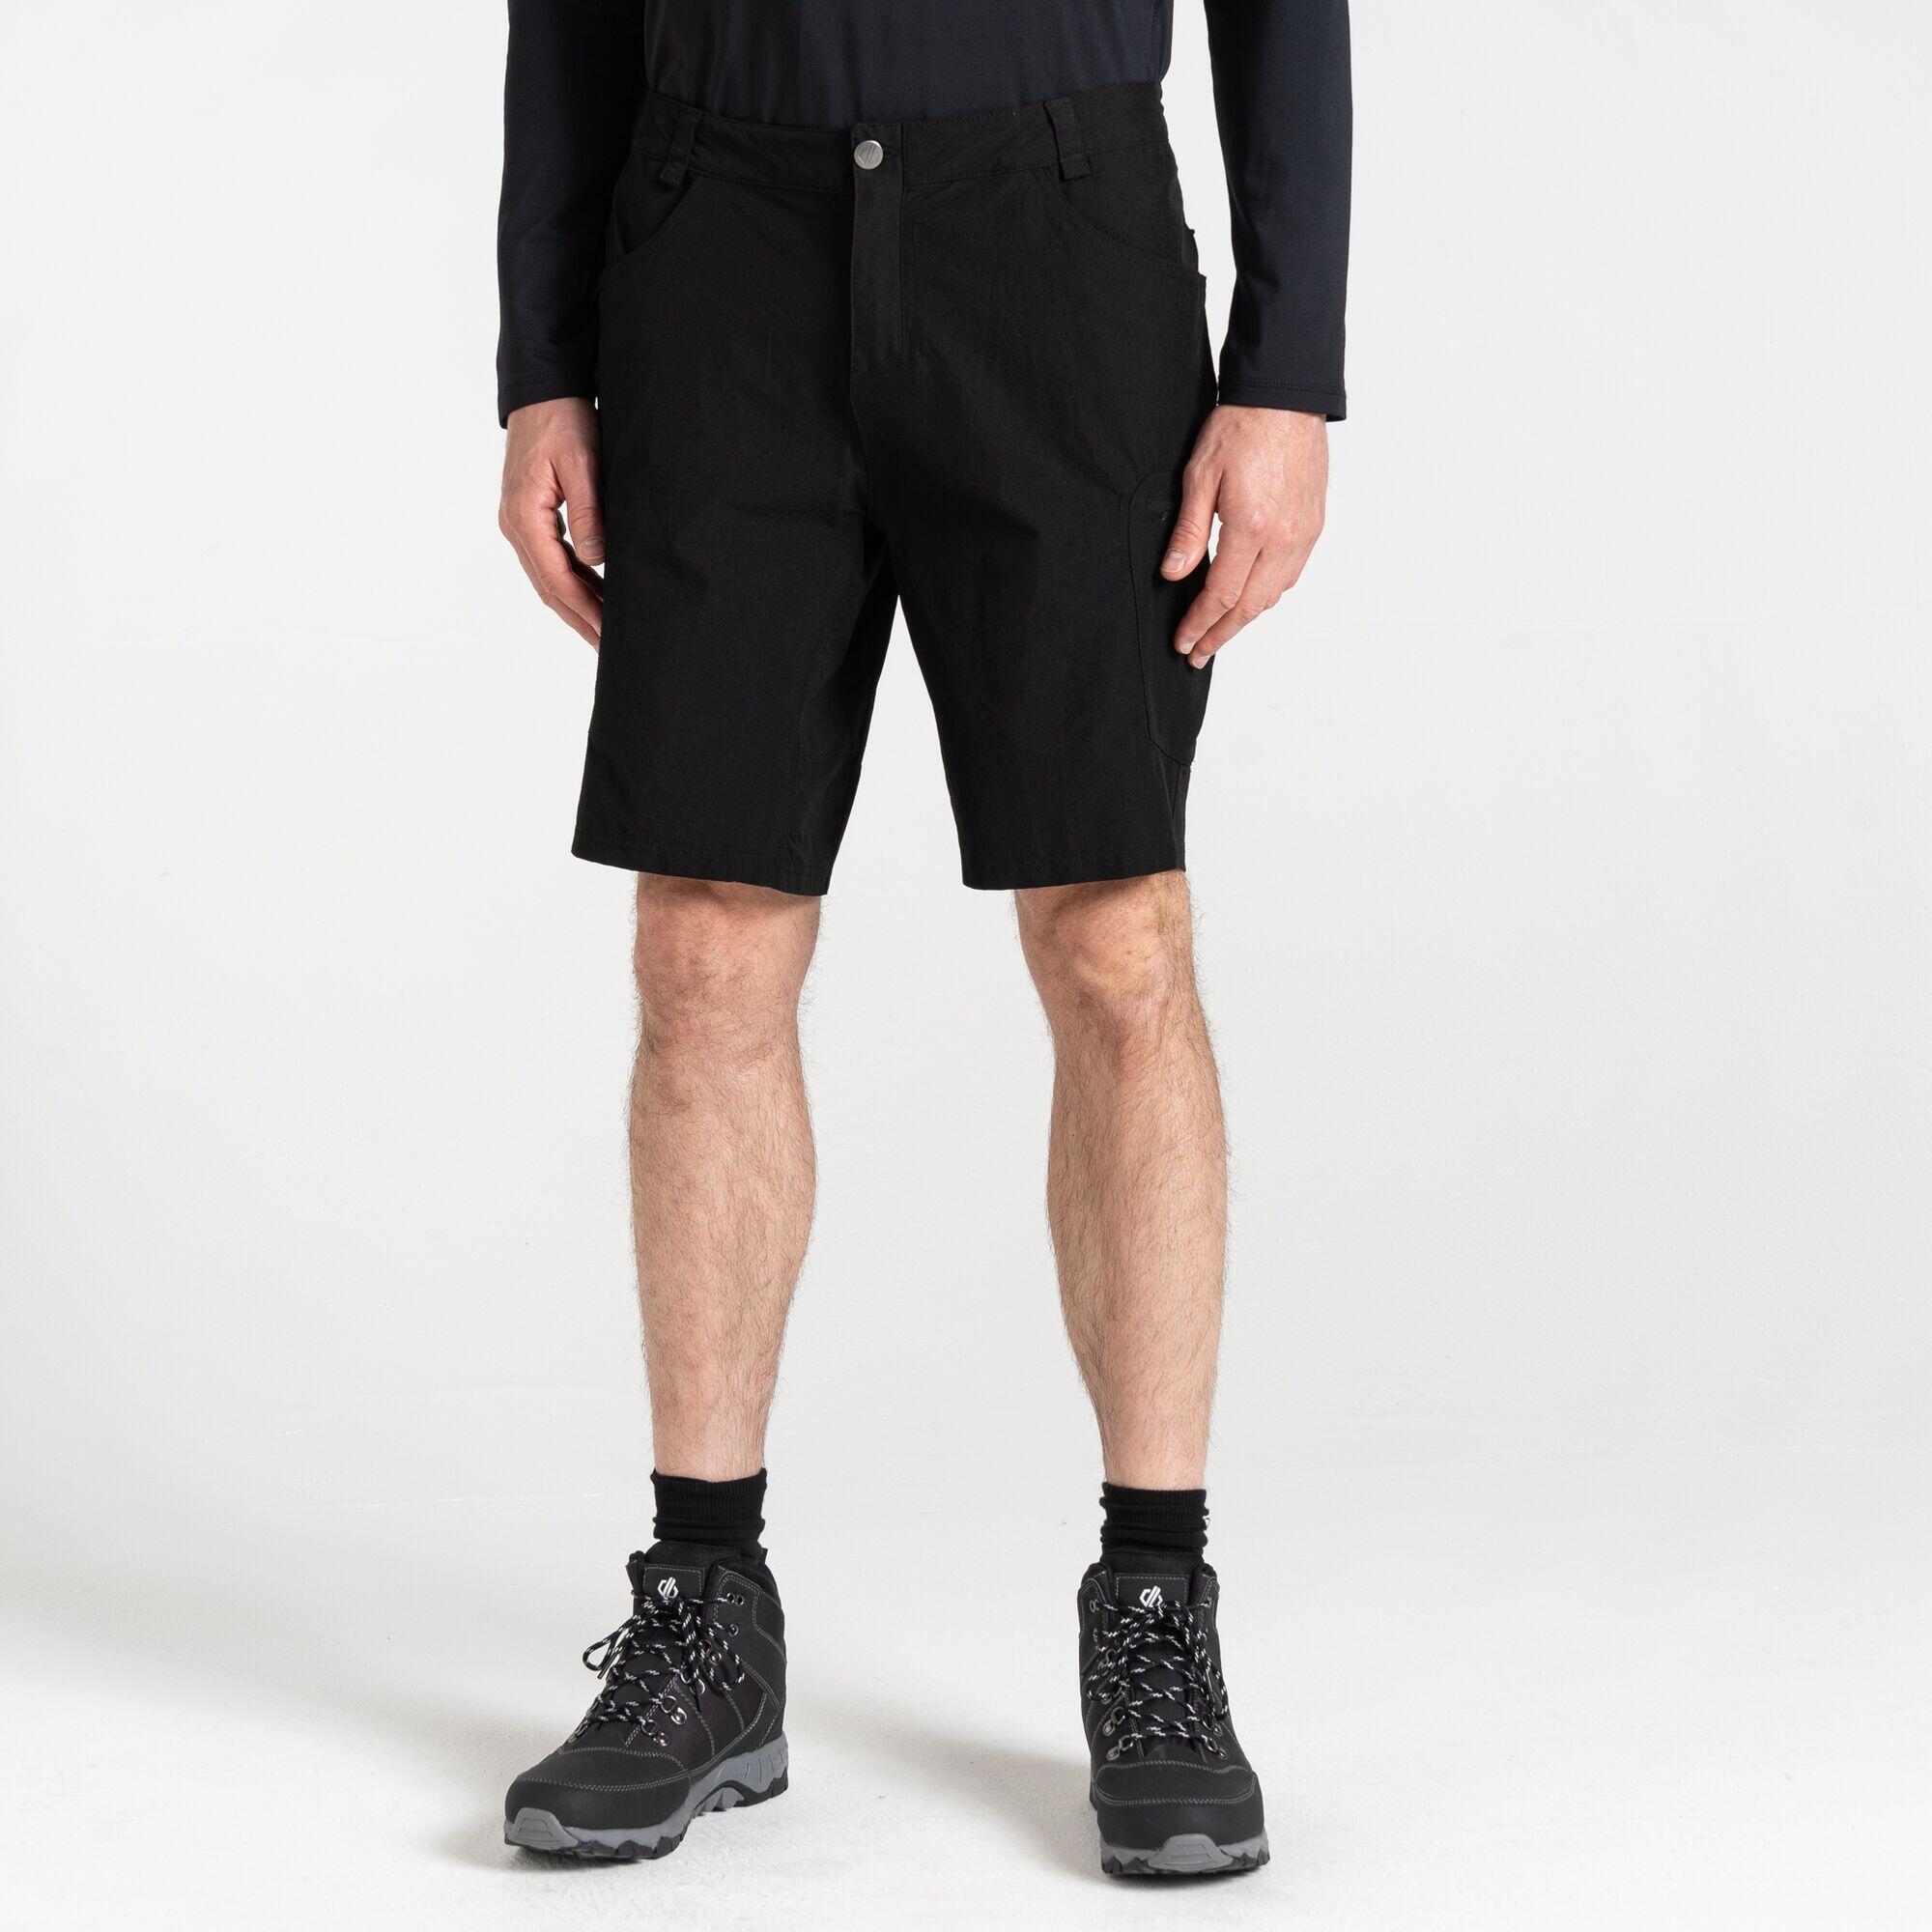 Tuned In II  Men's Walking  Shorts - Black 2/7